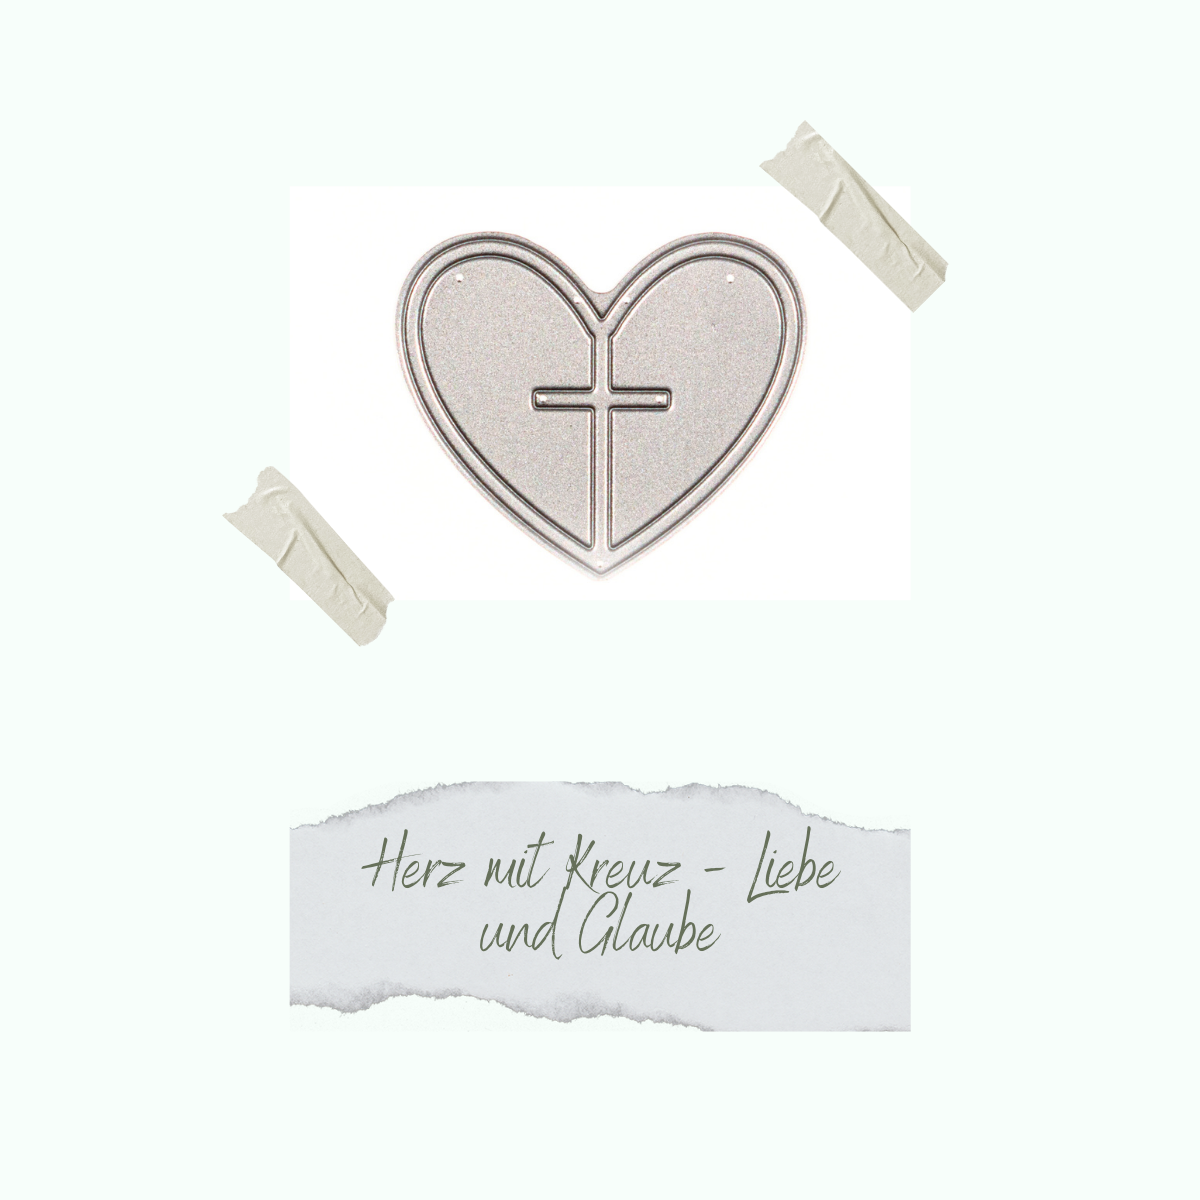 Die - Herz mit Kreuz- Liebe und Glaube - Nur noch so lange der Vorrat reicht